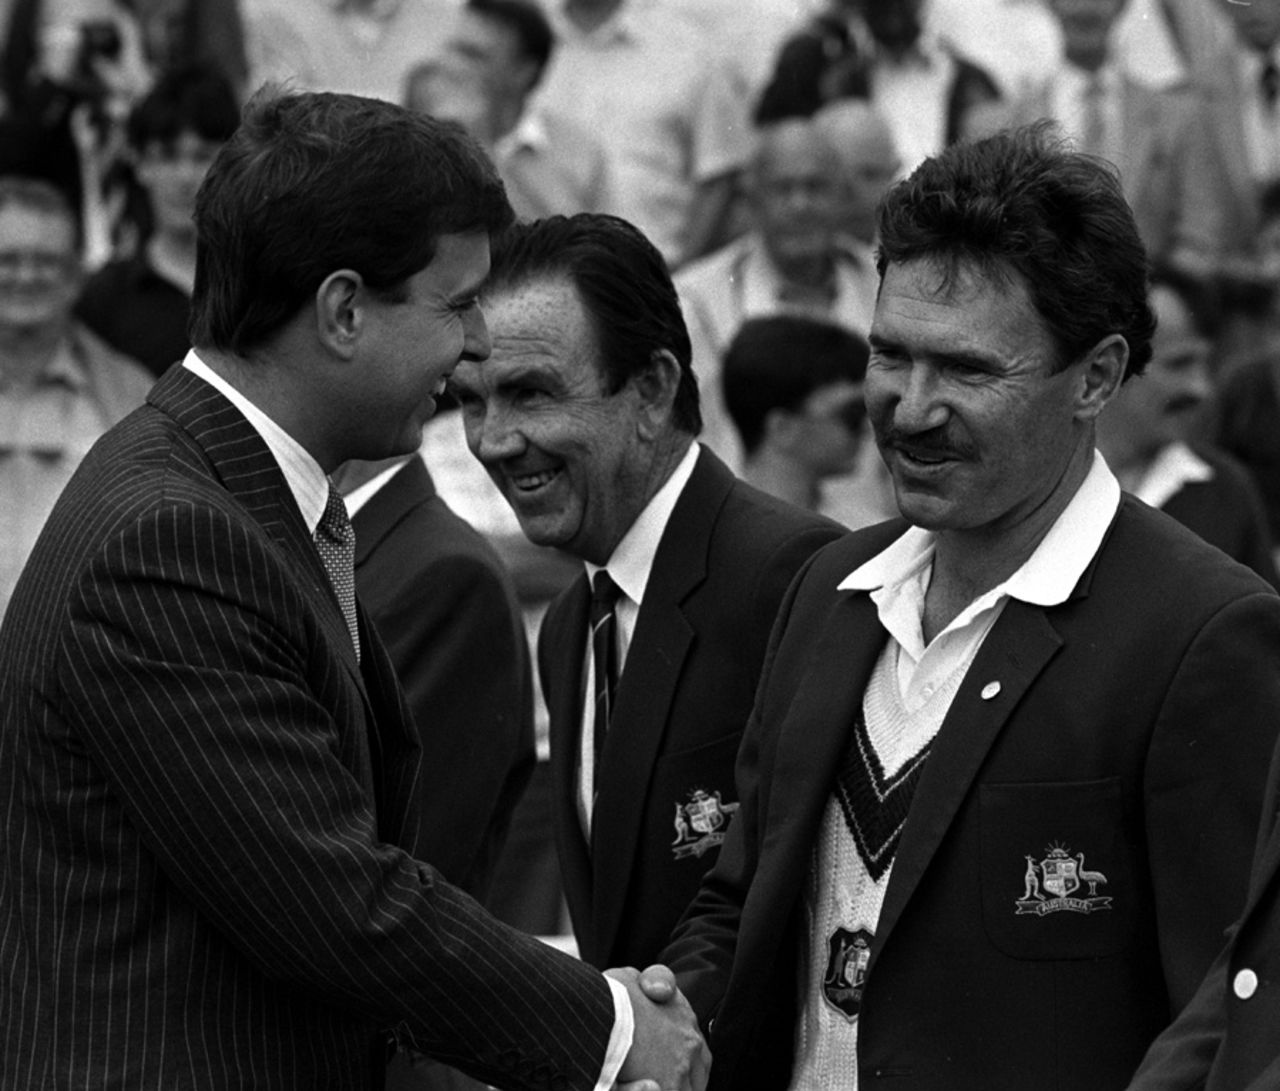 The Duke of York shakes hands with Australian captain Allan Border, England v Australia, 4th Test, 1st day, July 27, 1989